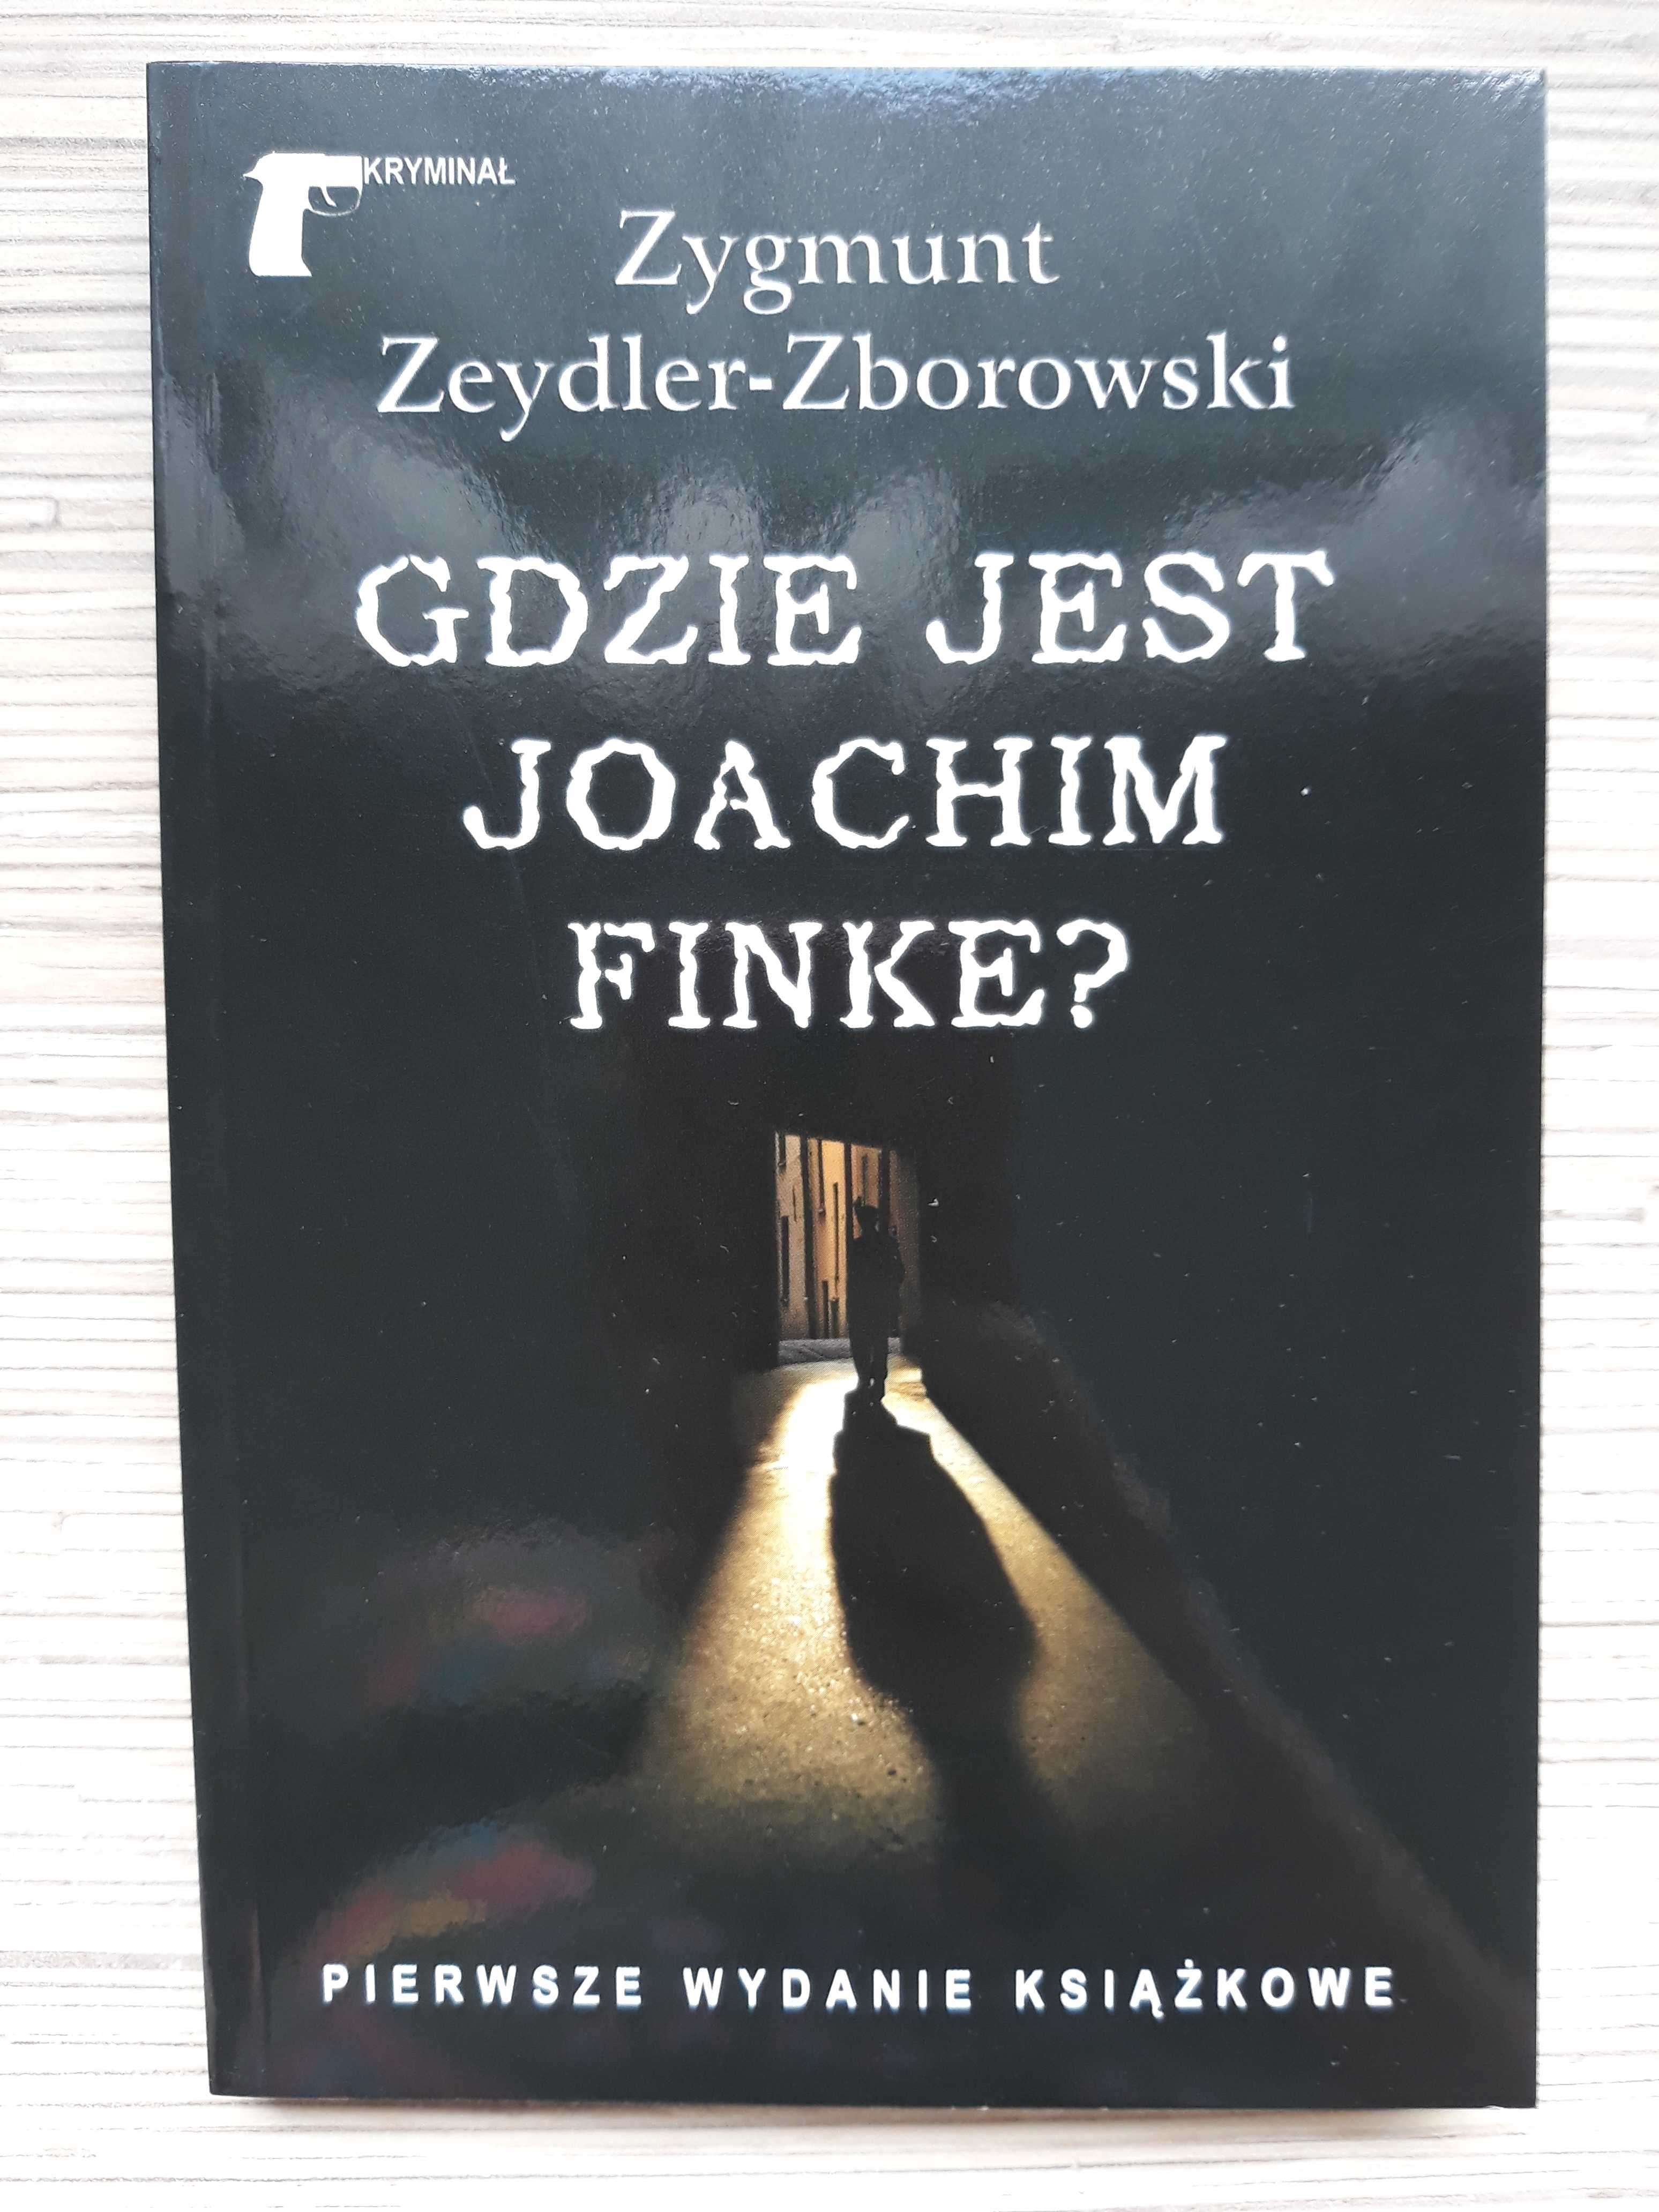 Zygmunt Zeydler-Zborowski "Gdzie jest Joachim Finke?"